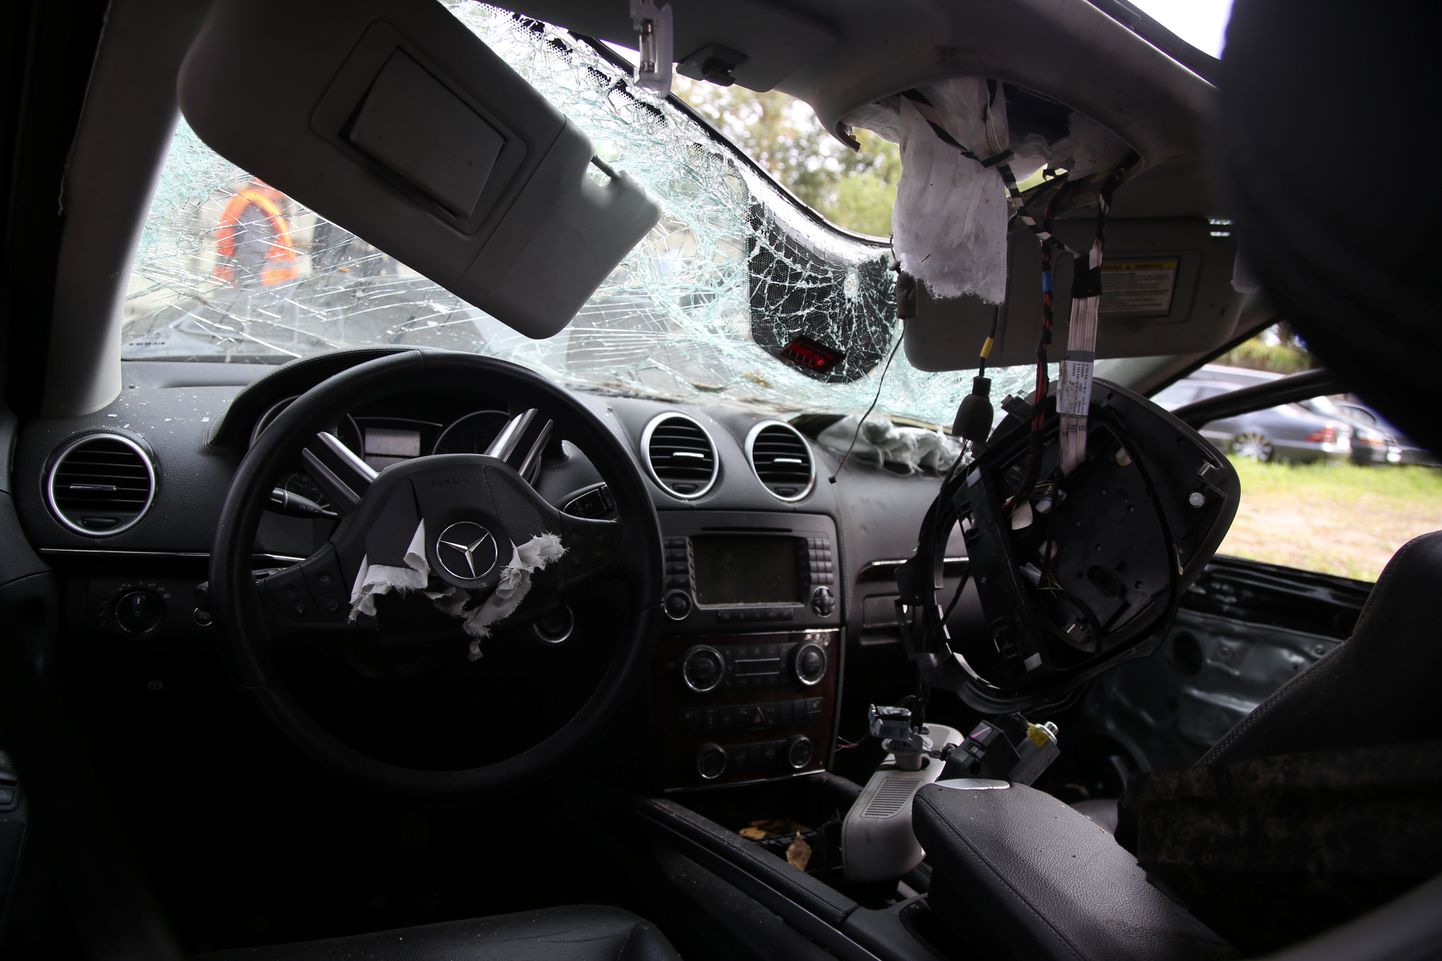 Automašīna, kura cietusi smagā ceļu satiksmes negadījumā Valsts policijas projekta "Edward" preses konferences laikā